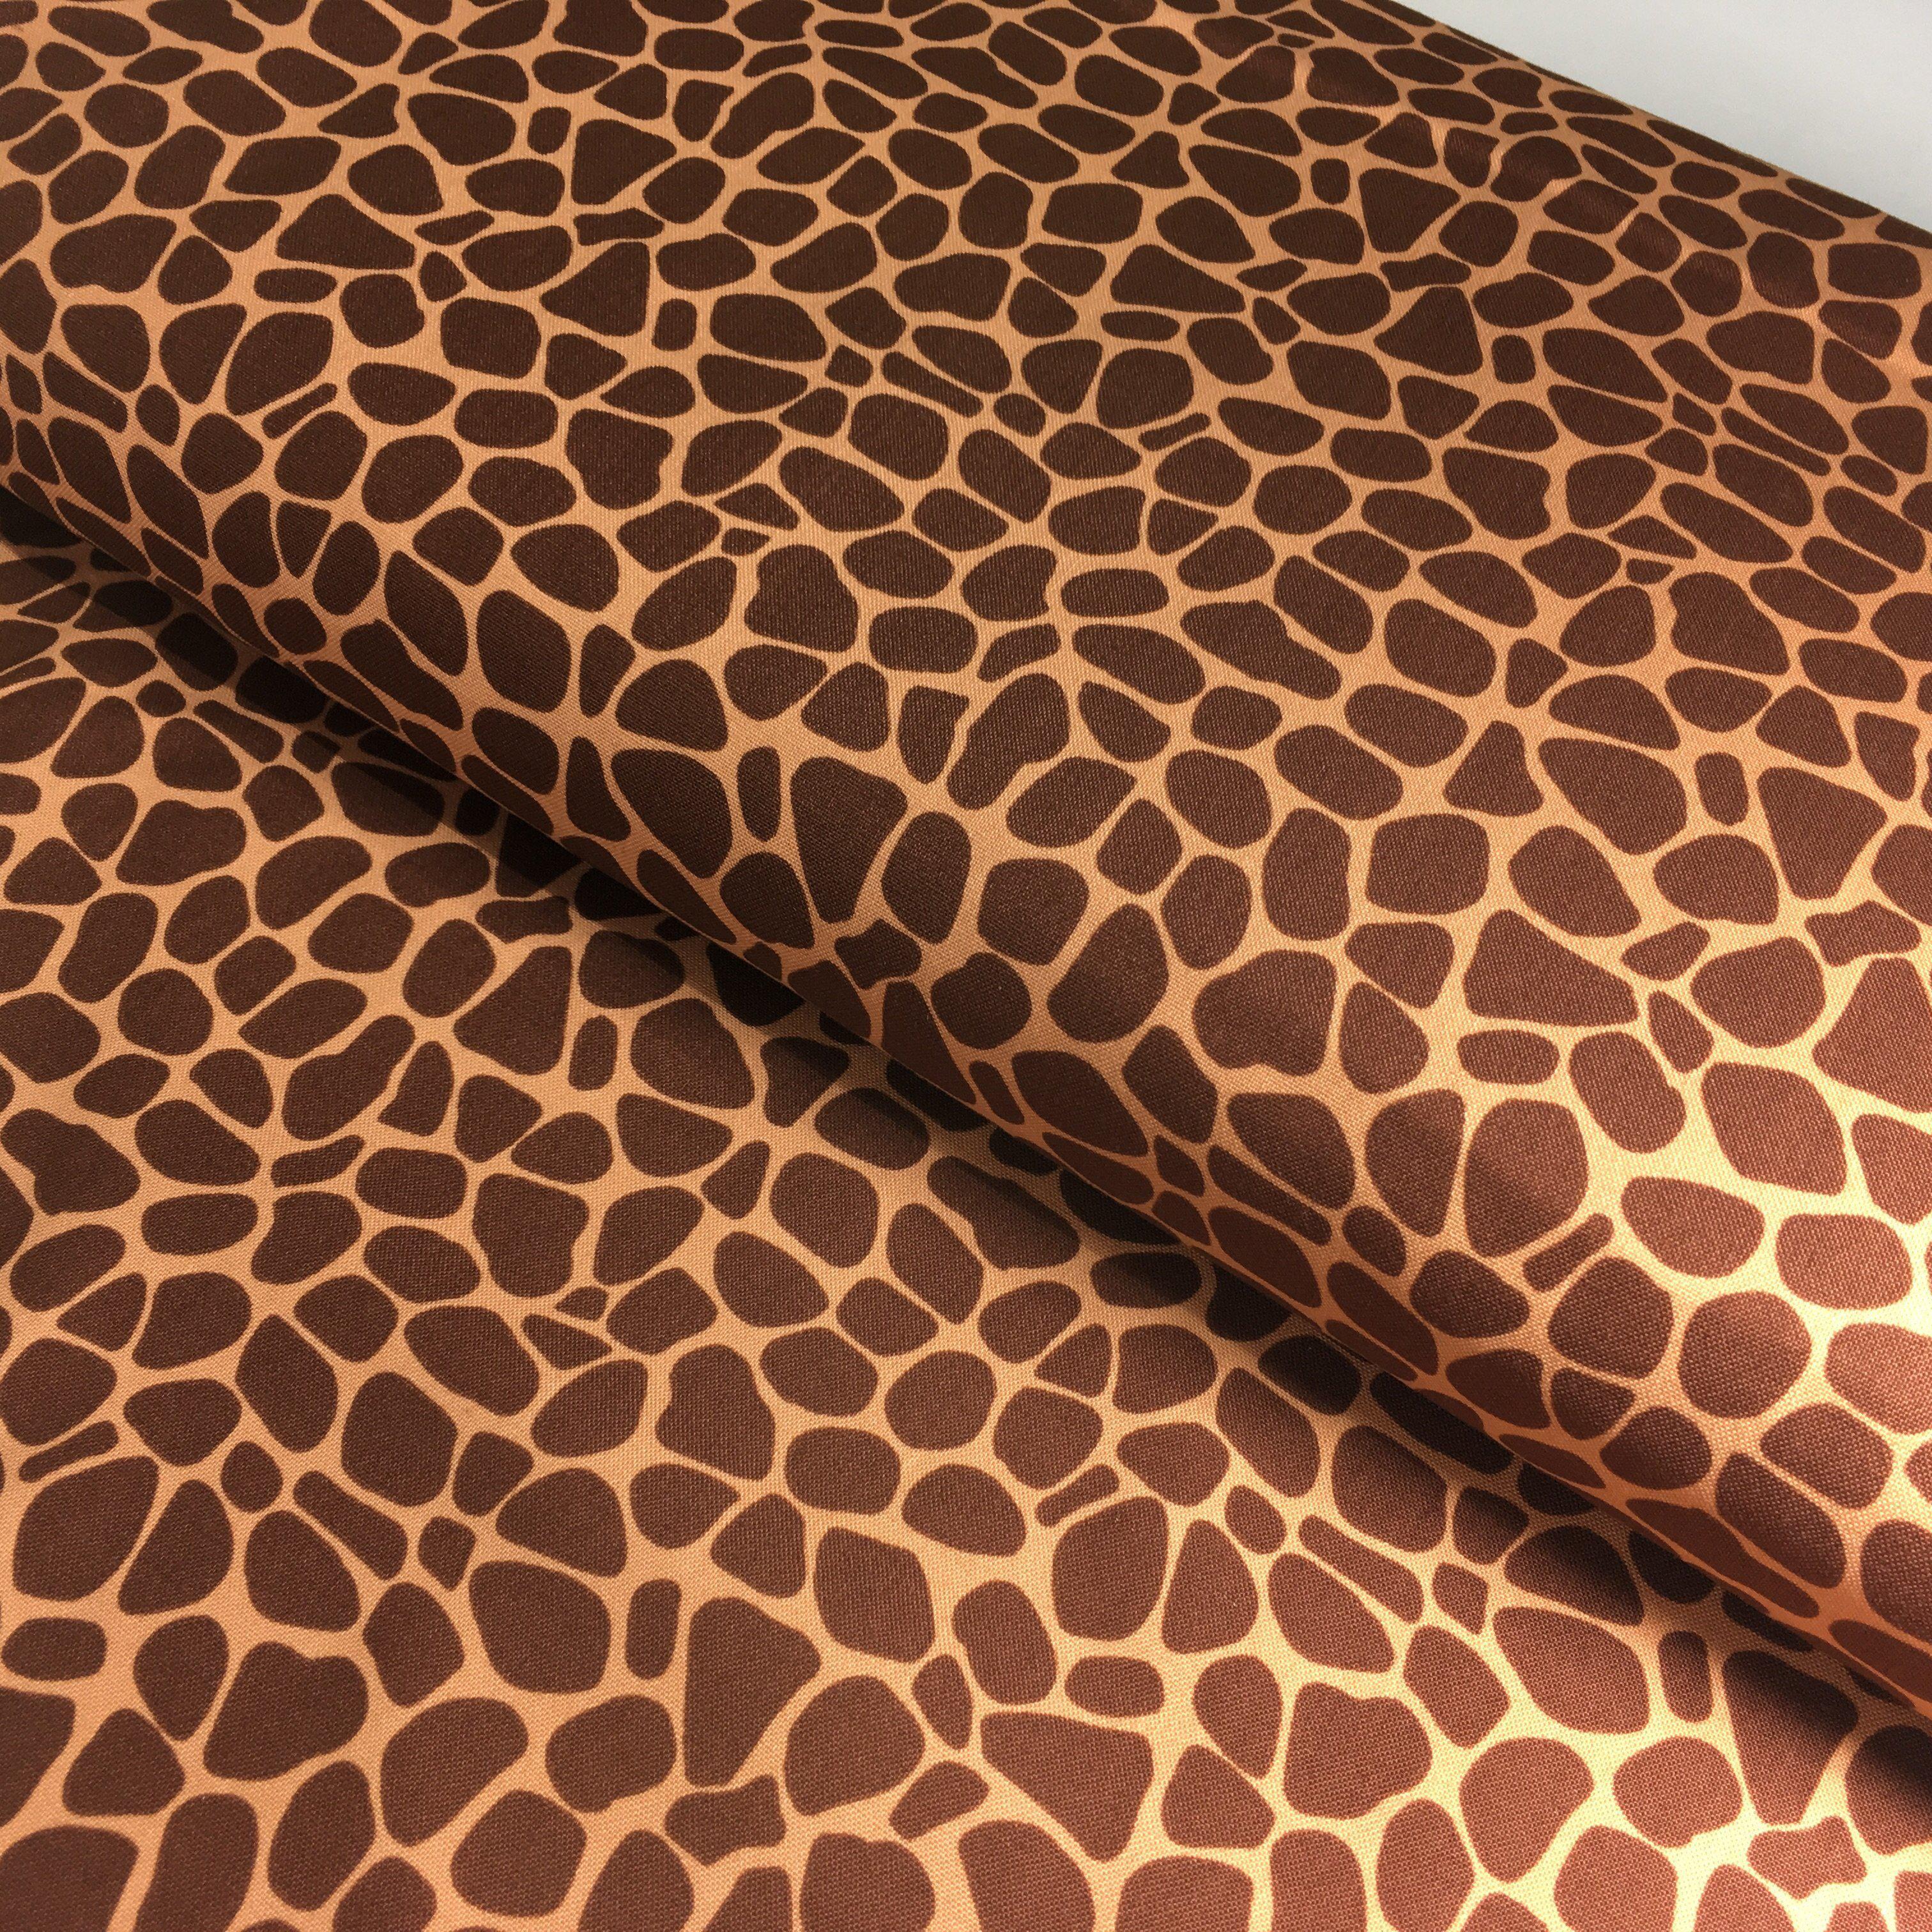 Zoe the Giraffe Skin Print Fabric-Susybee-My Favorite Quilt Store